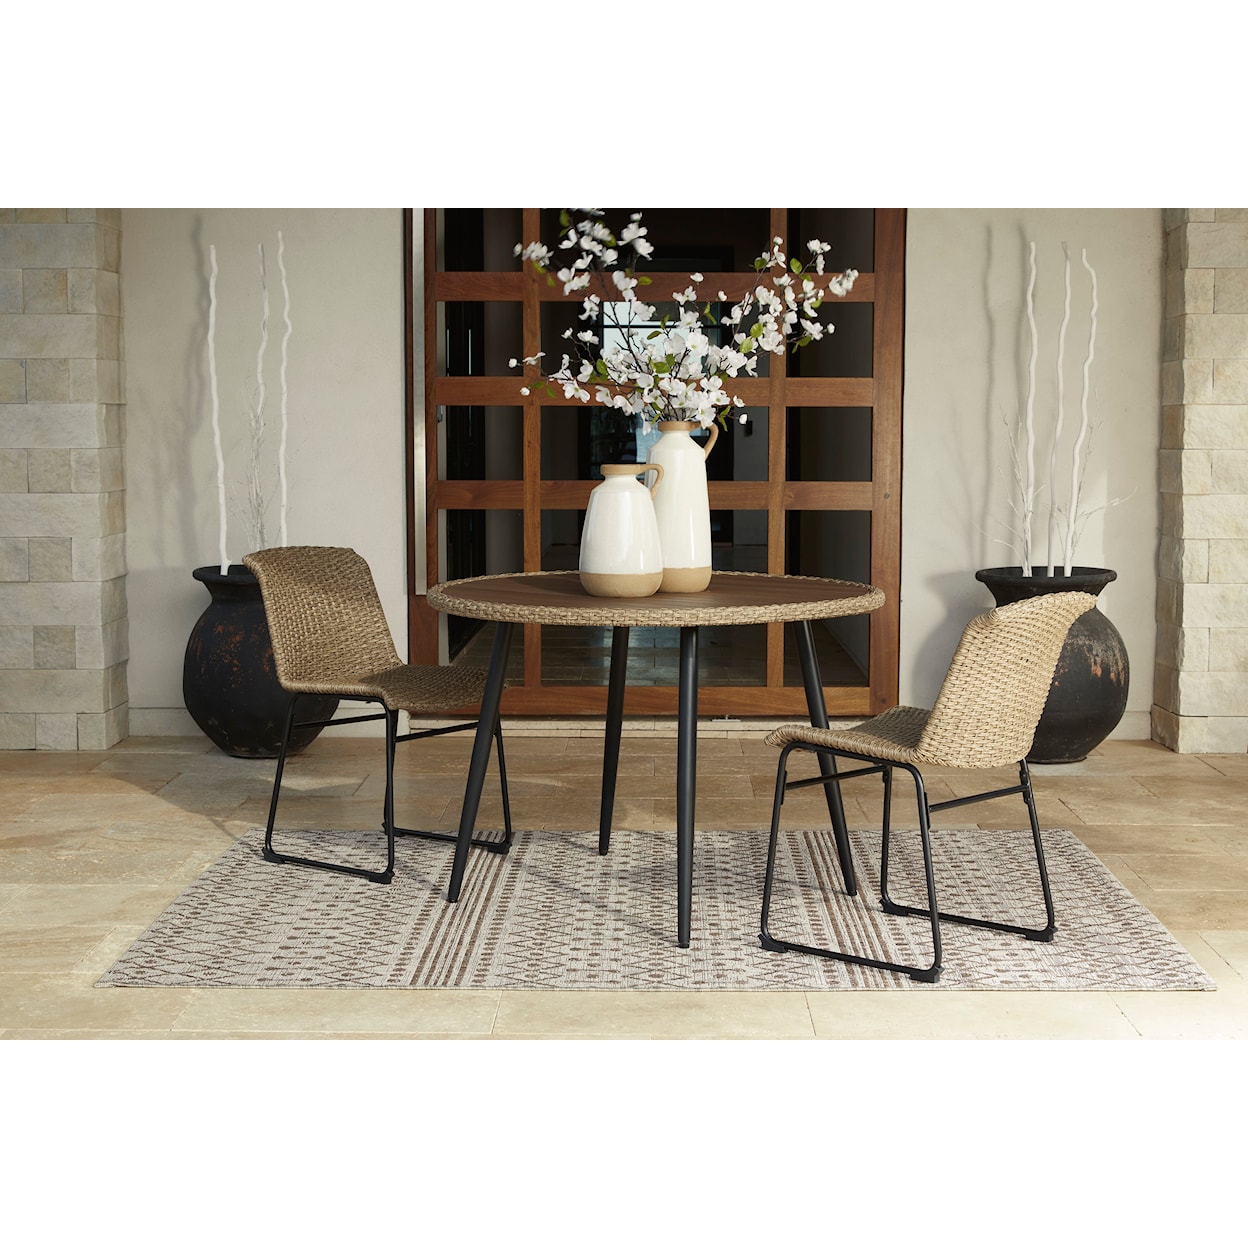 Ashley Furniture Signature Design Amaris Outdoor Dining Table